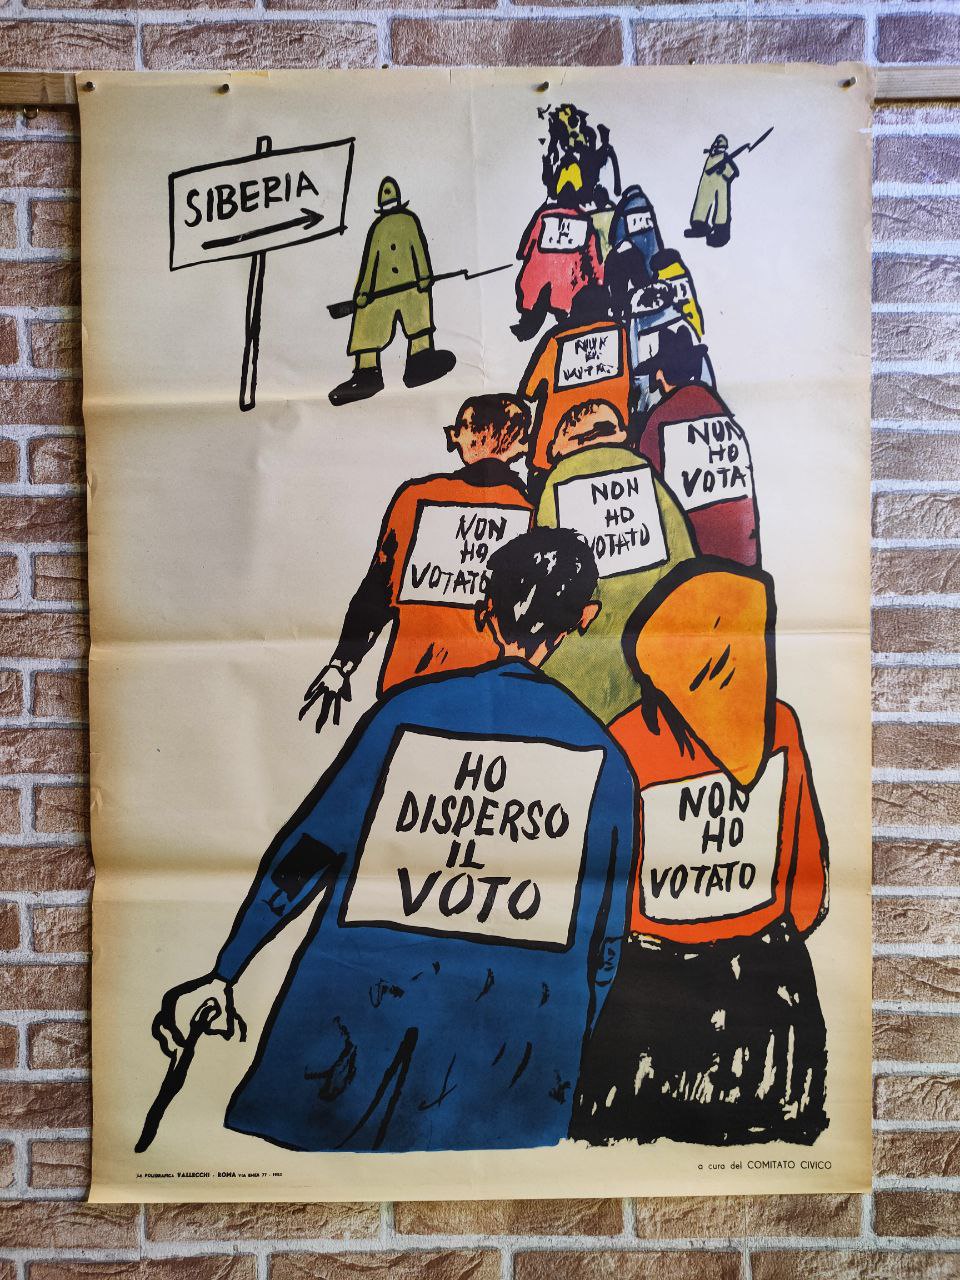 Manifesto originale pubblicitario - Non ho votato, Siberia, Comitato Civico